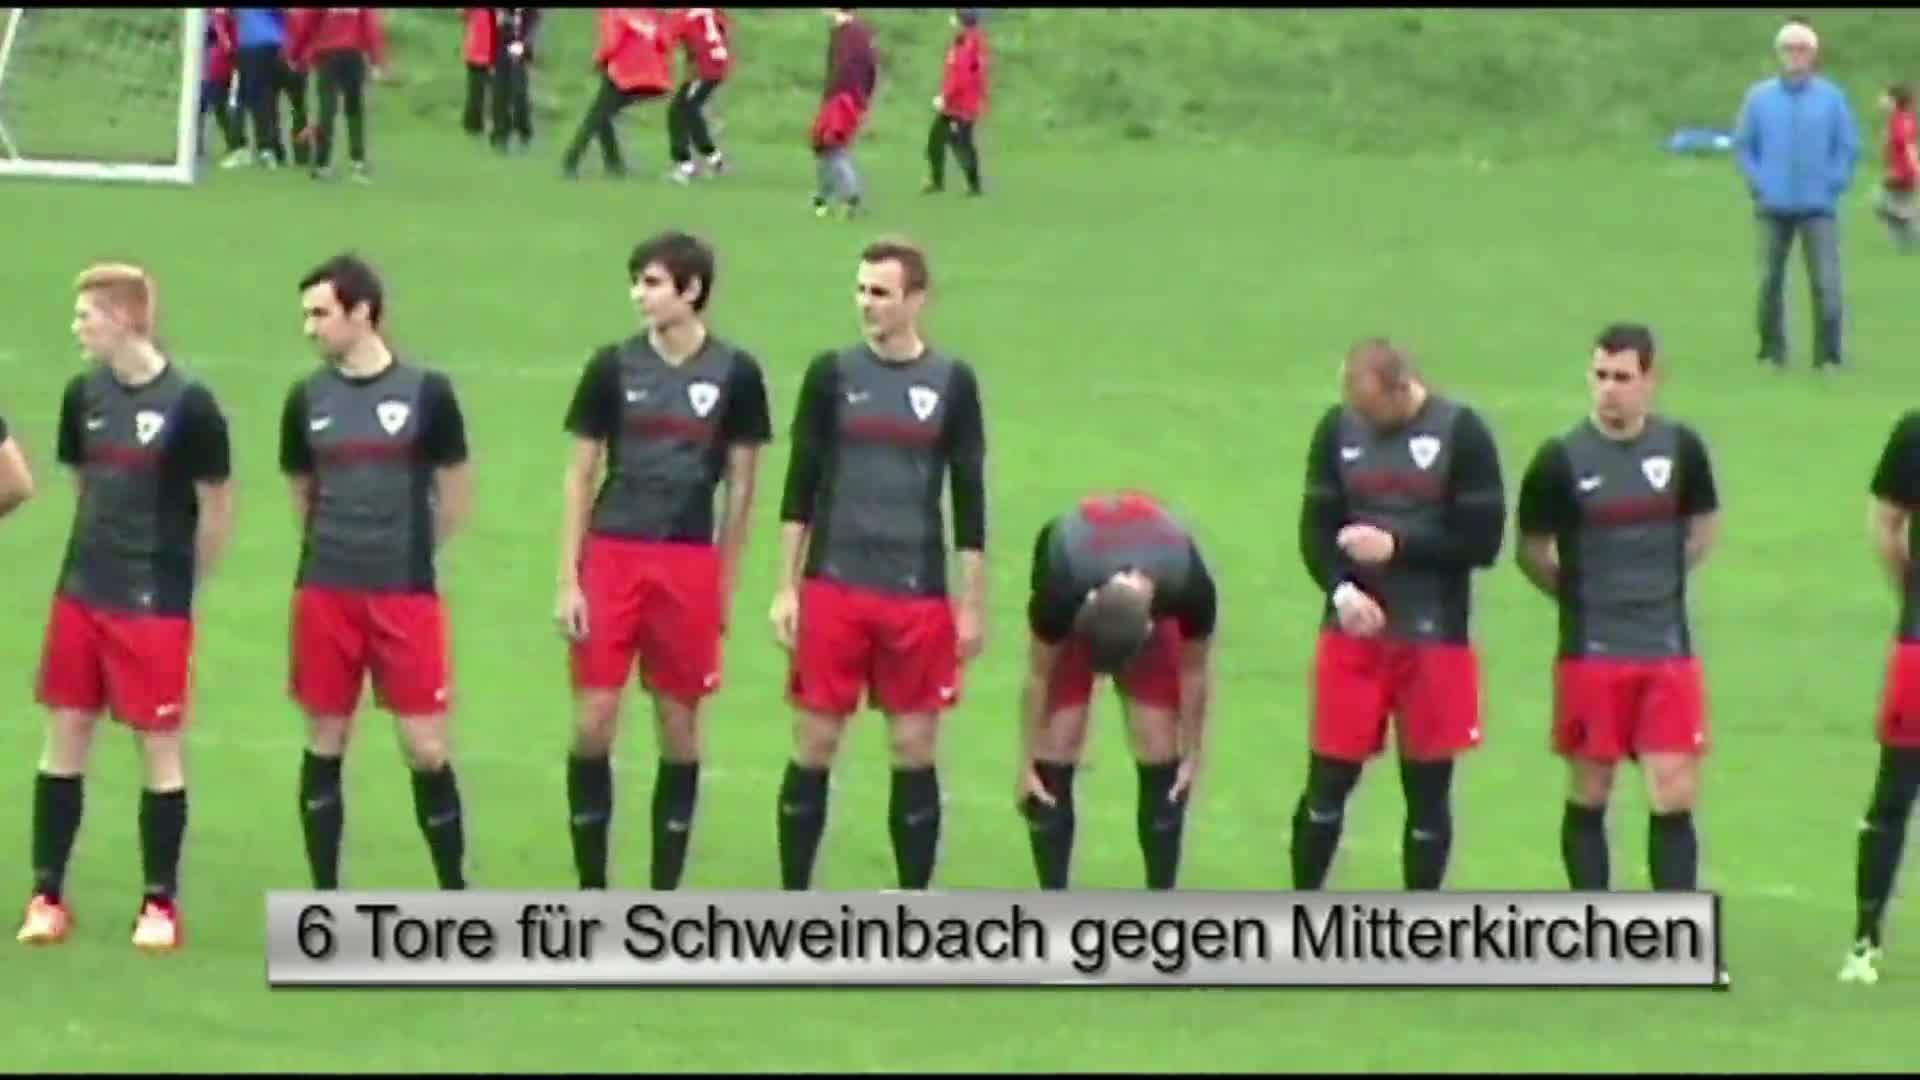 6 Tore für Schweinbach gegen Mitterkirchen!